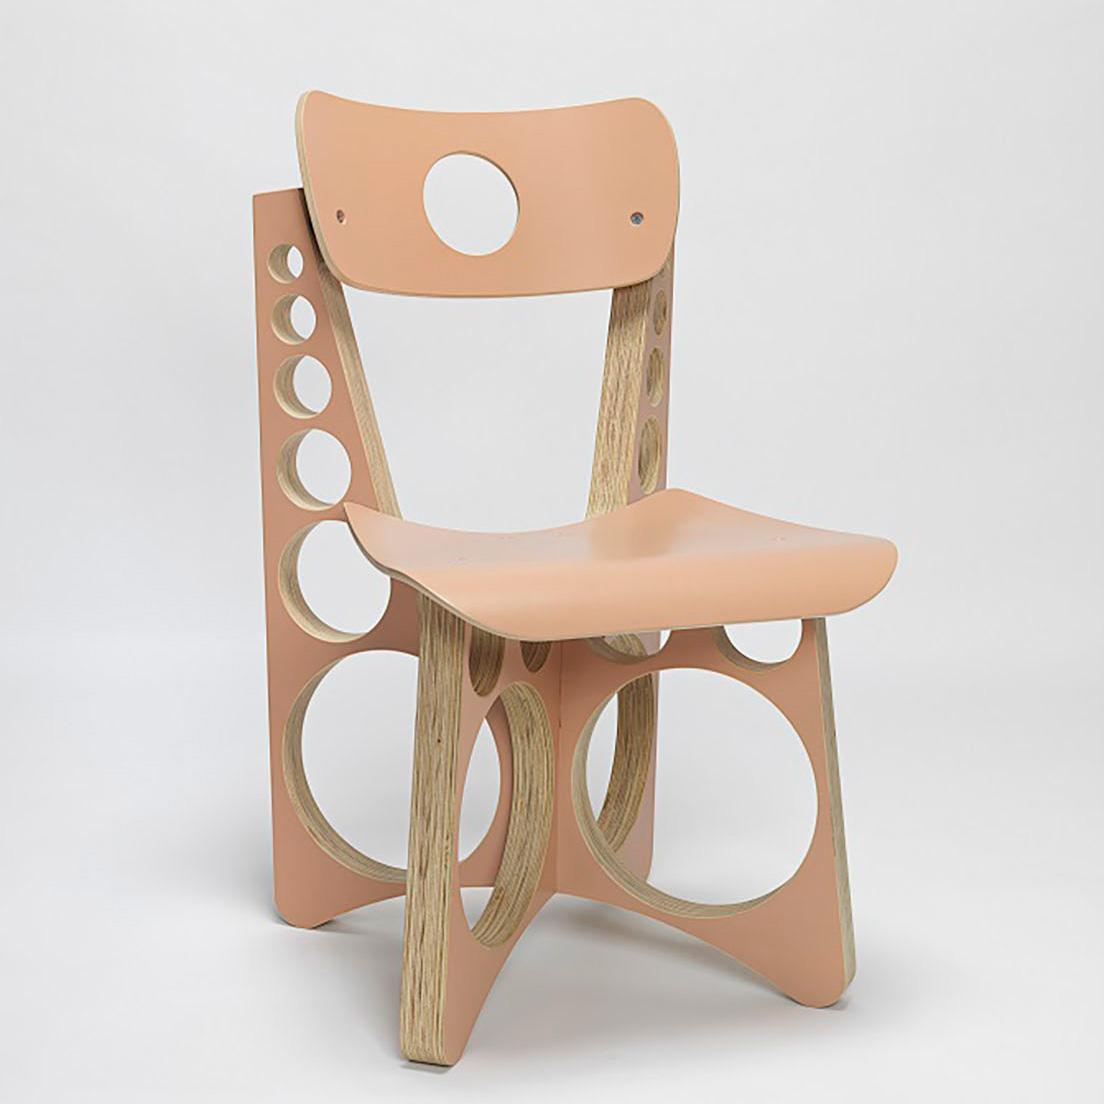 《Shop Chair》　©Tom Sachs

